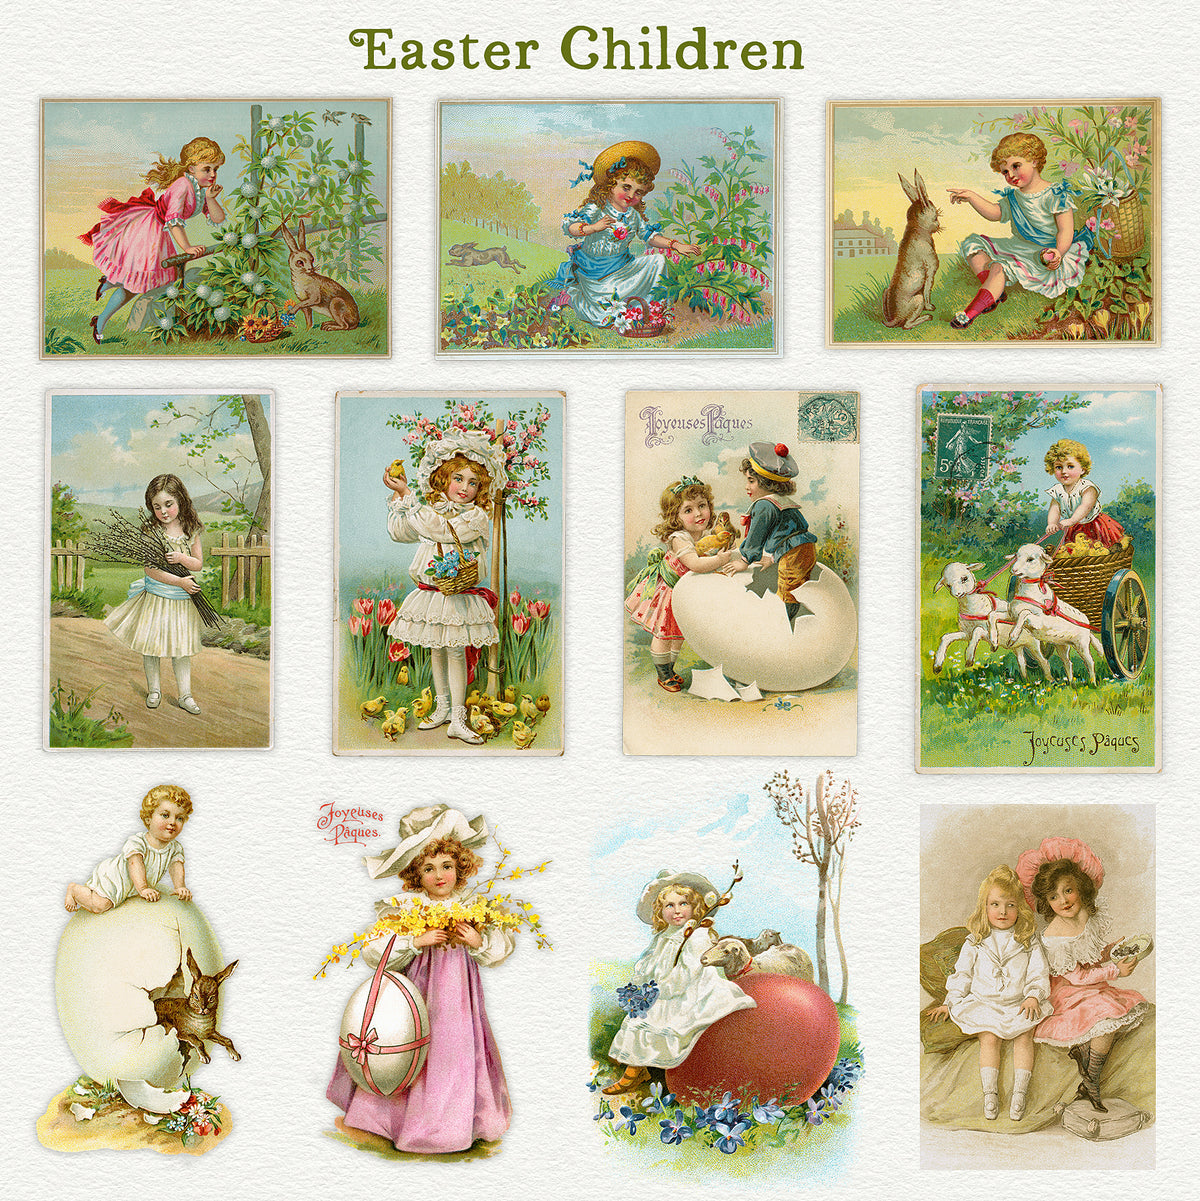 Vintage Easter Children illustration digital graphics from postcards.